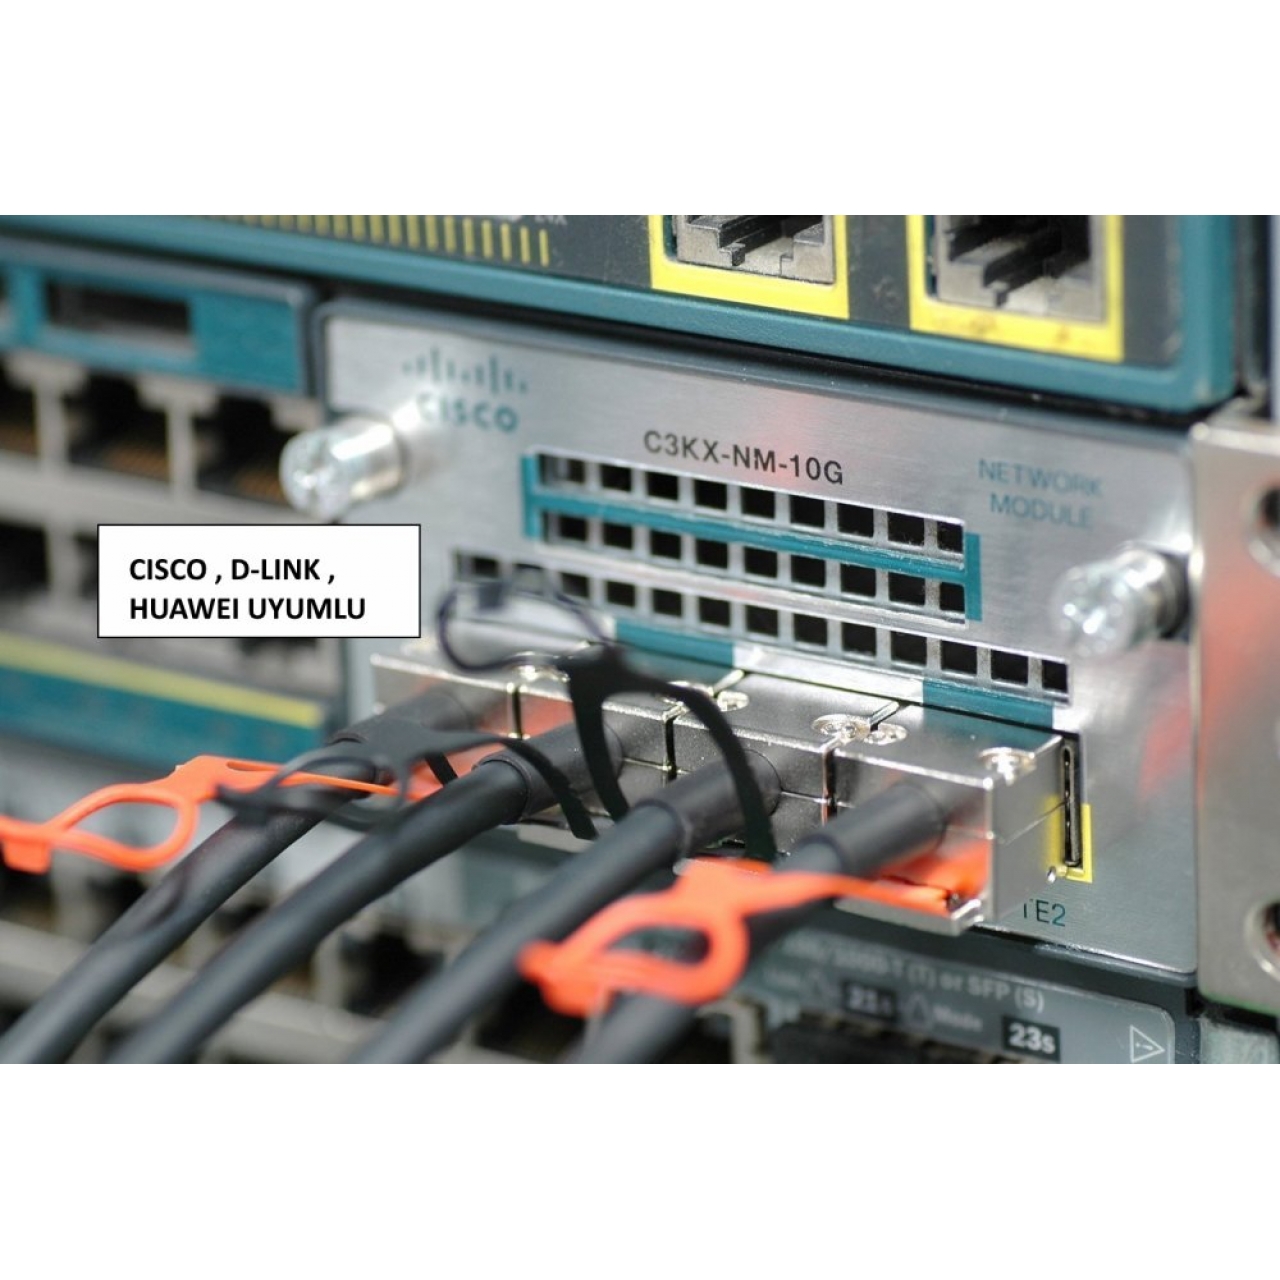 Dac Kablo 5 Metre Cisco Supermicro Dell Uyumlu